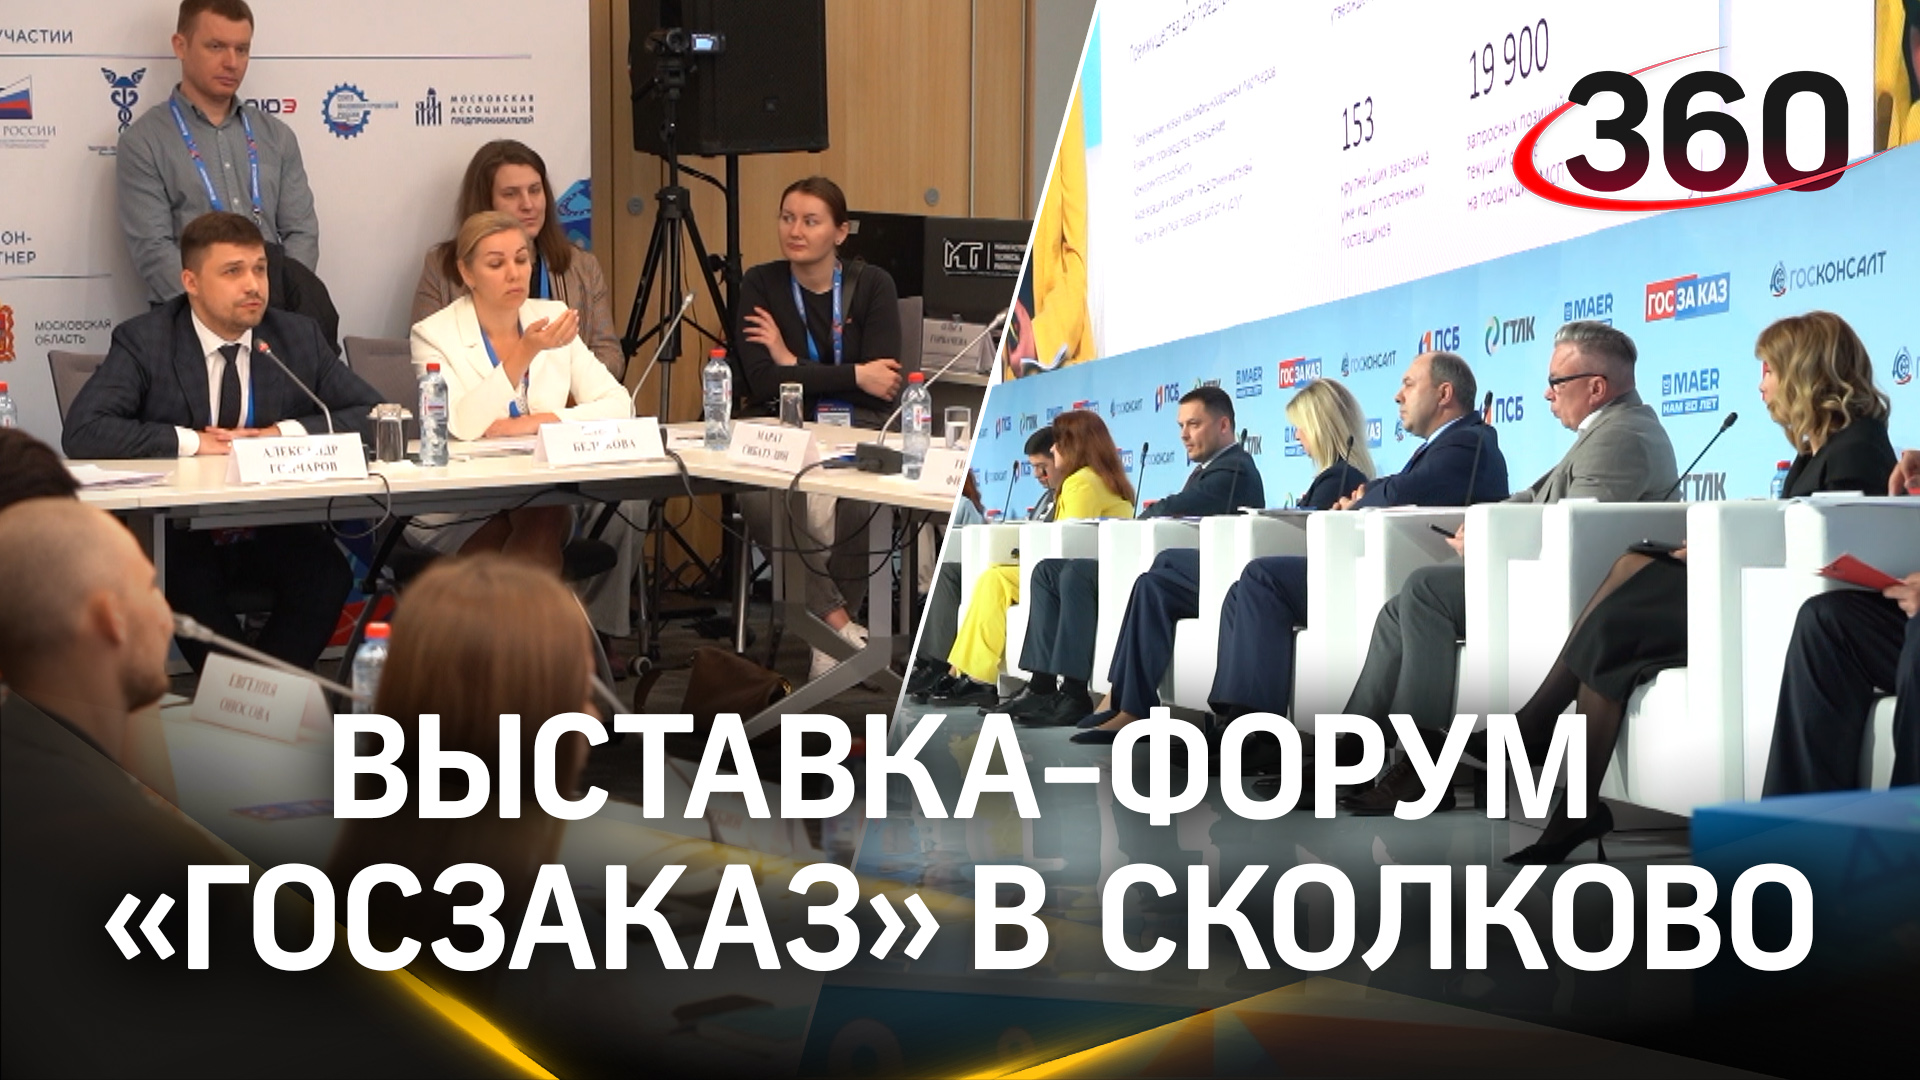 Новые идеи на выставке-форуме «Госзаказ» в Cколково: что обсуждали участники